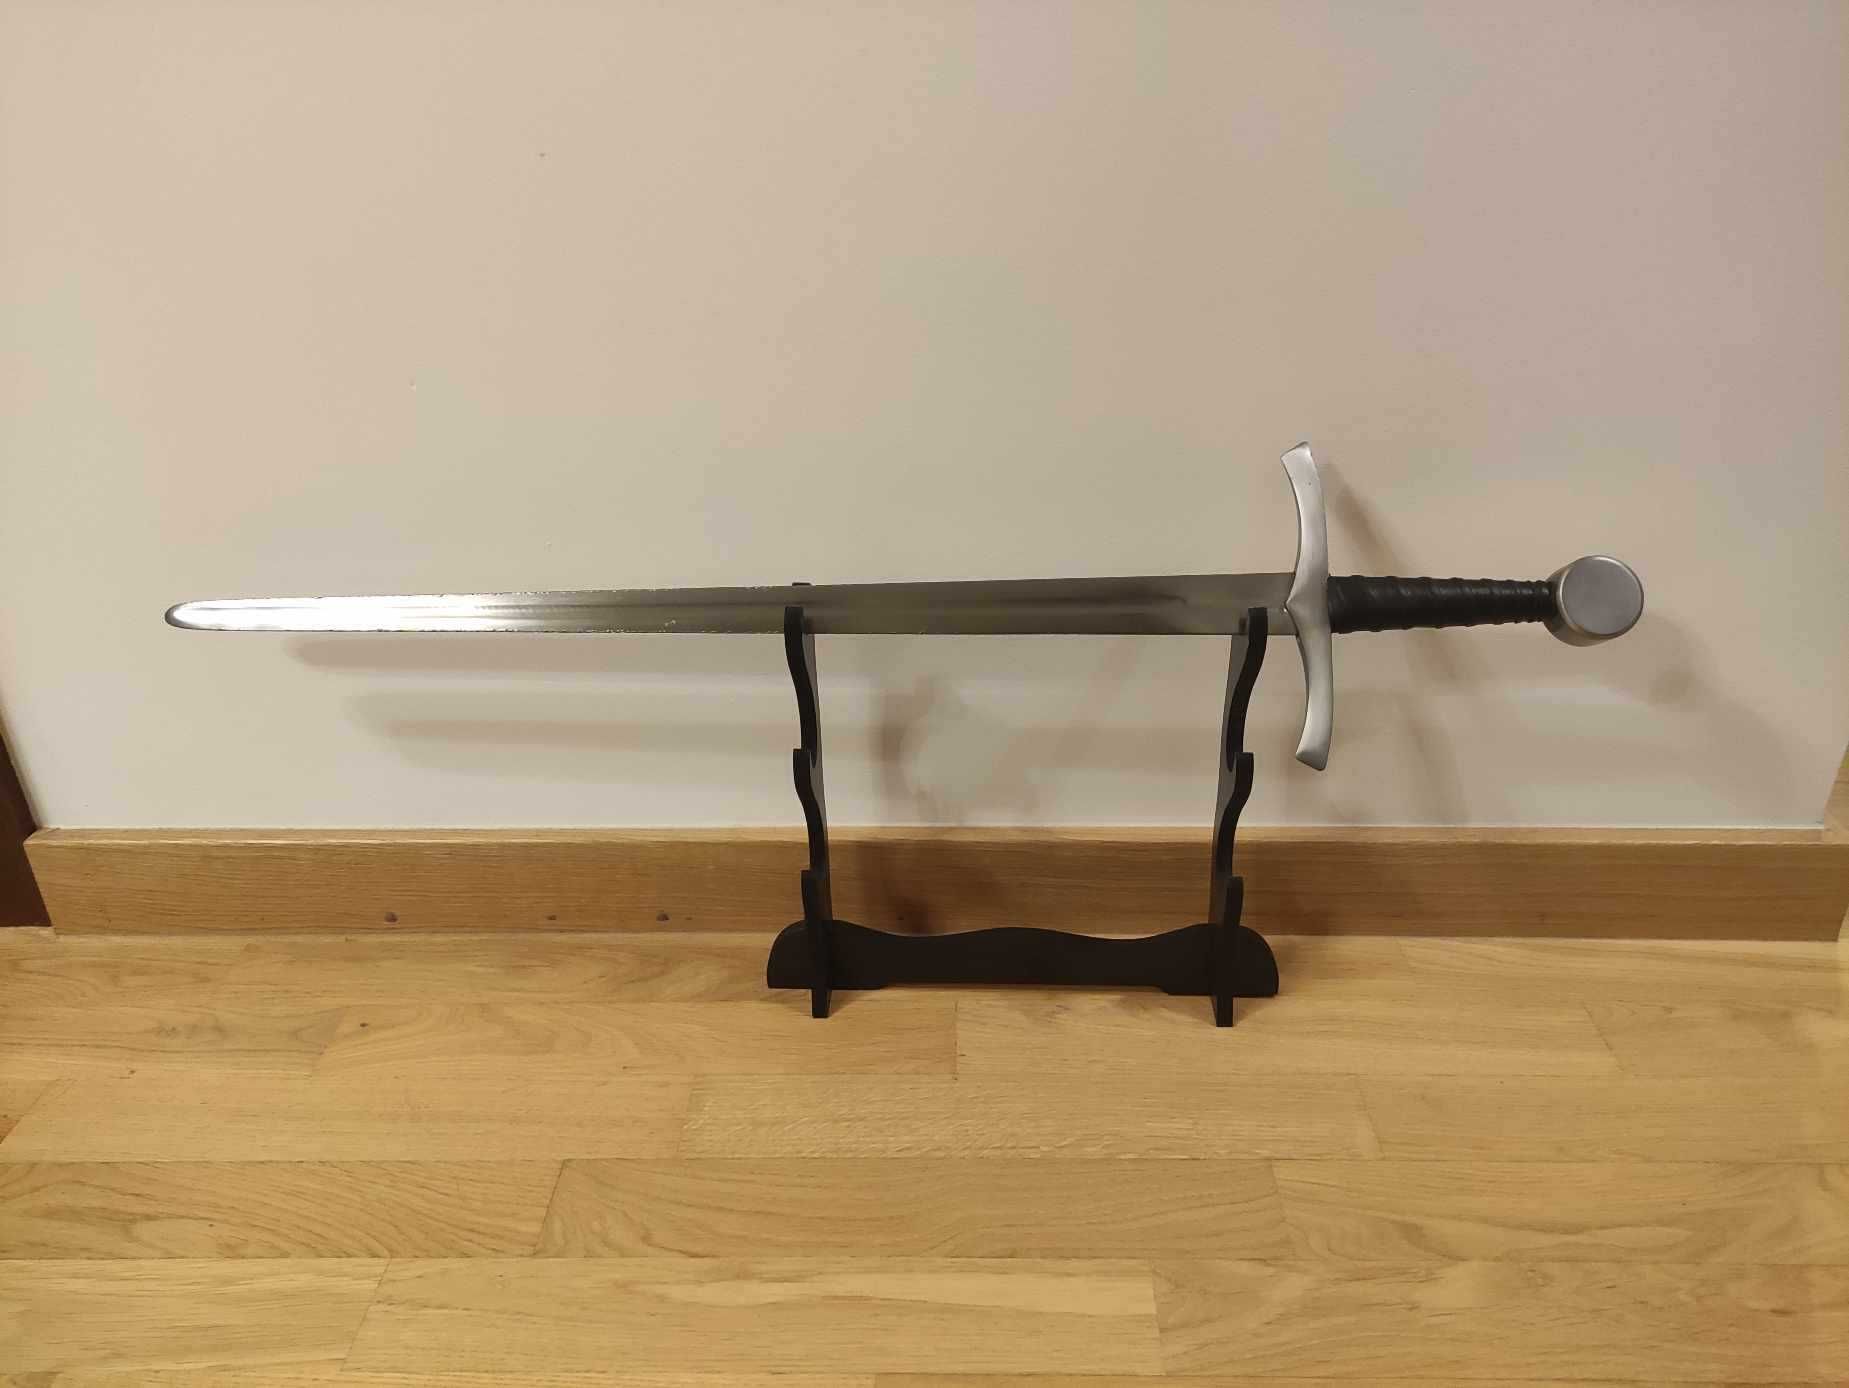 Jednoręczny miecz średniowieczny do walki XIV-XV wiek